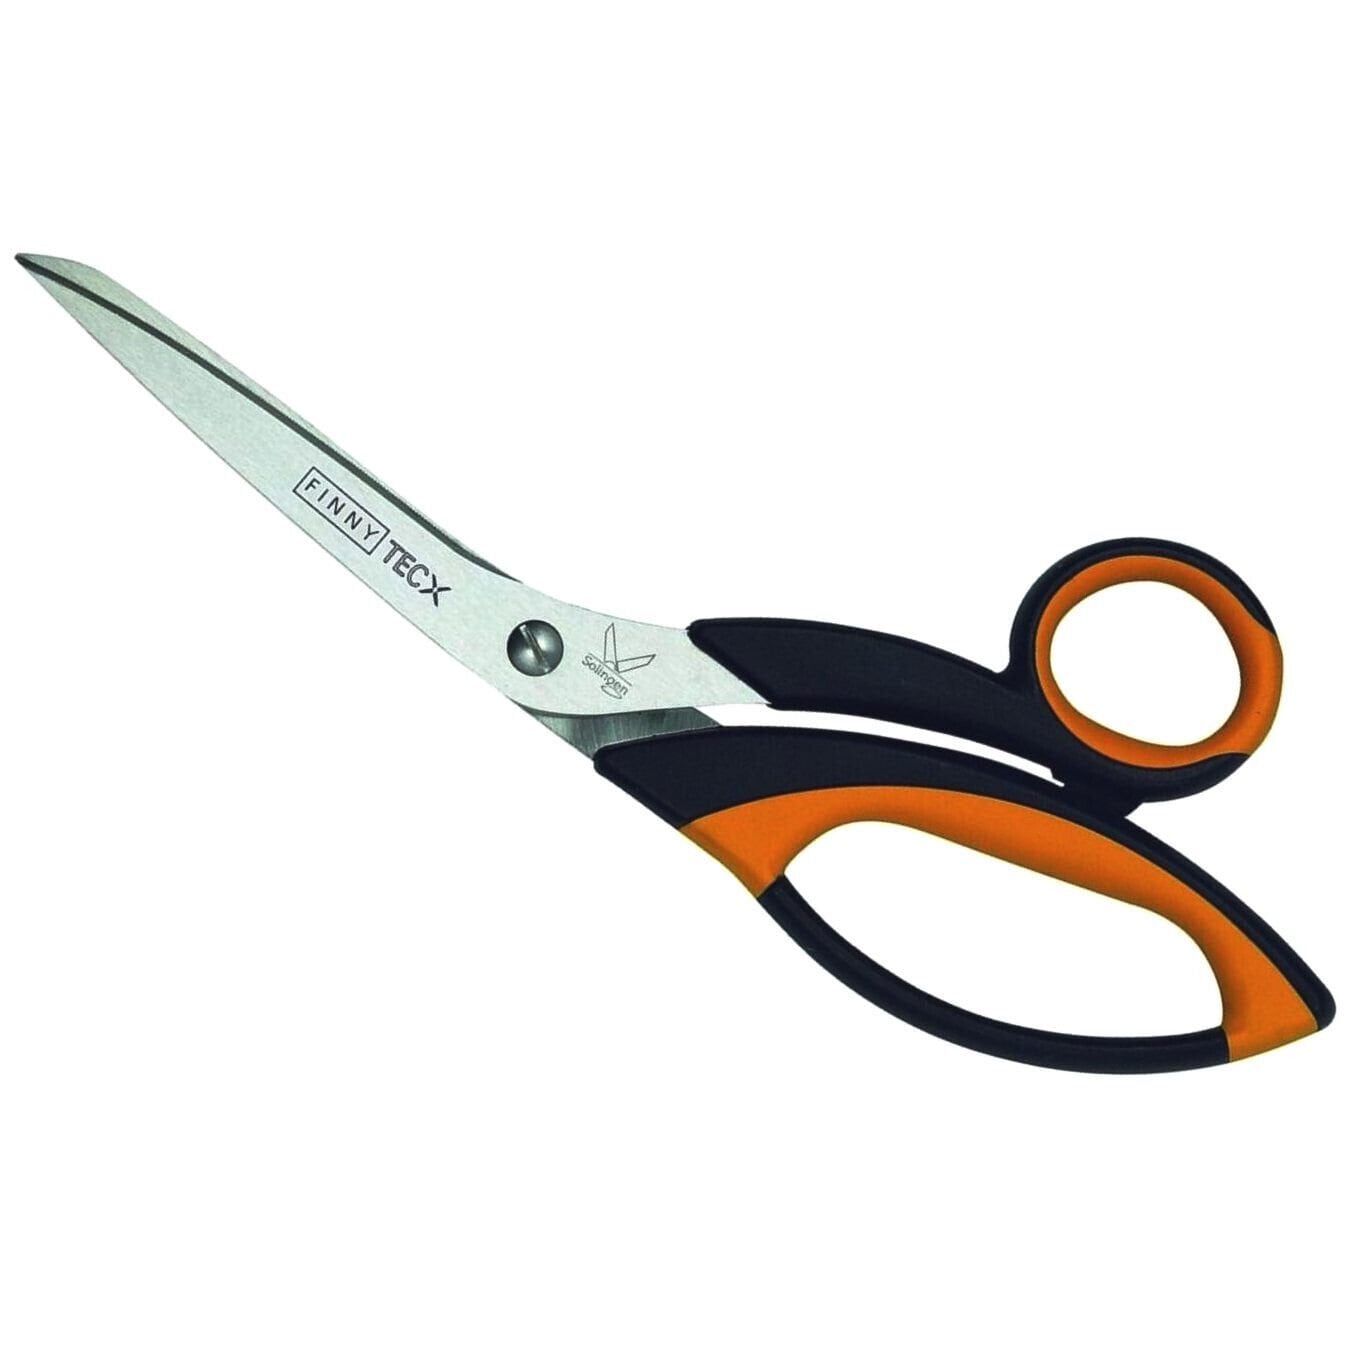 Kretzer Finny 772024 72024 9.5 / 24cm Cardboard / Foil / Sewing / Tailor's Scissors  Shears 